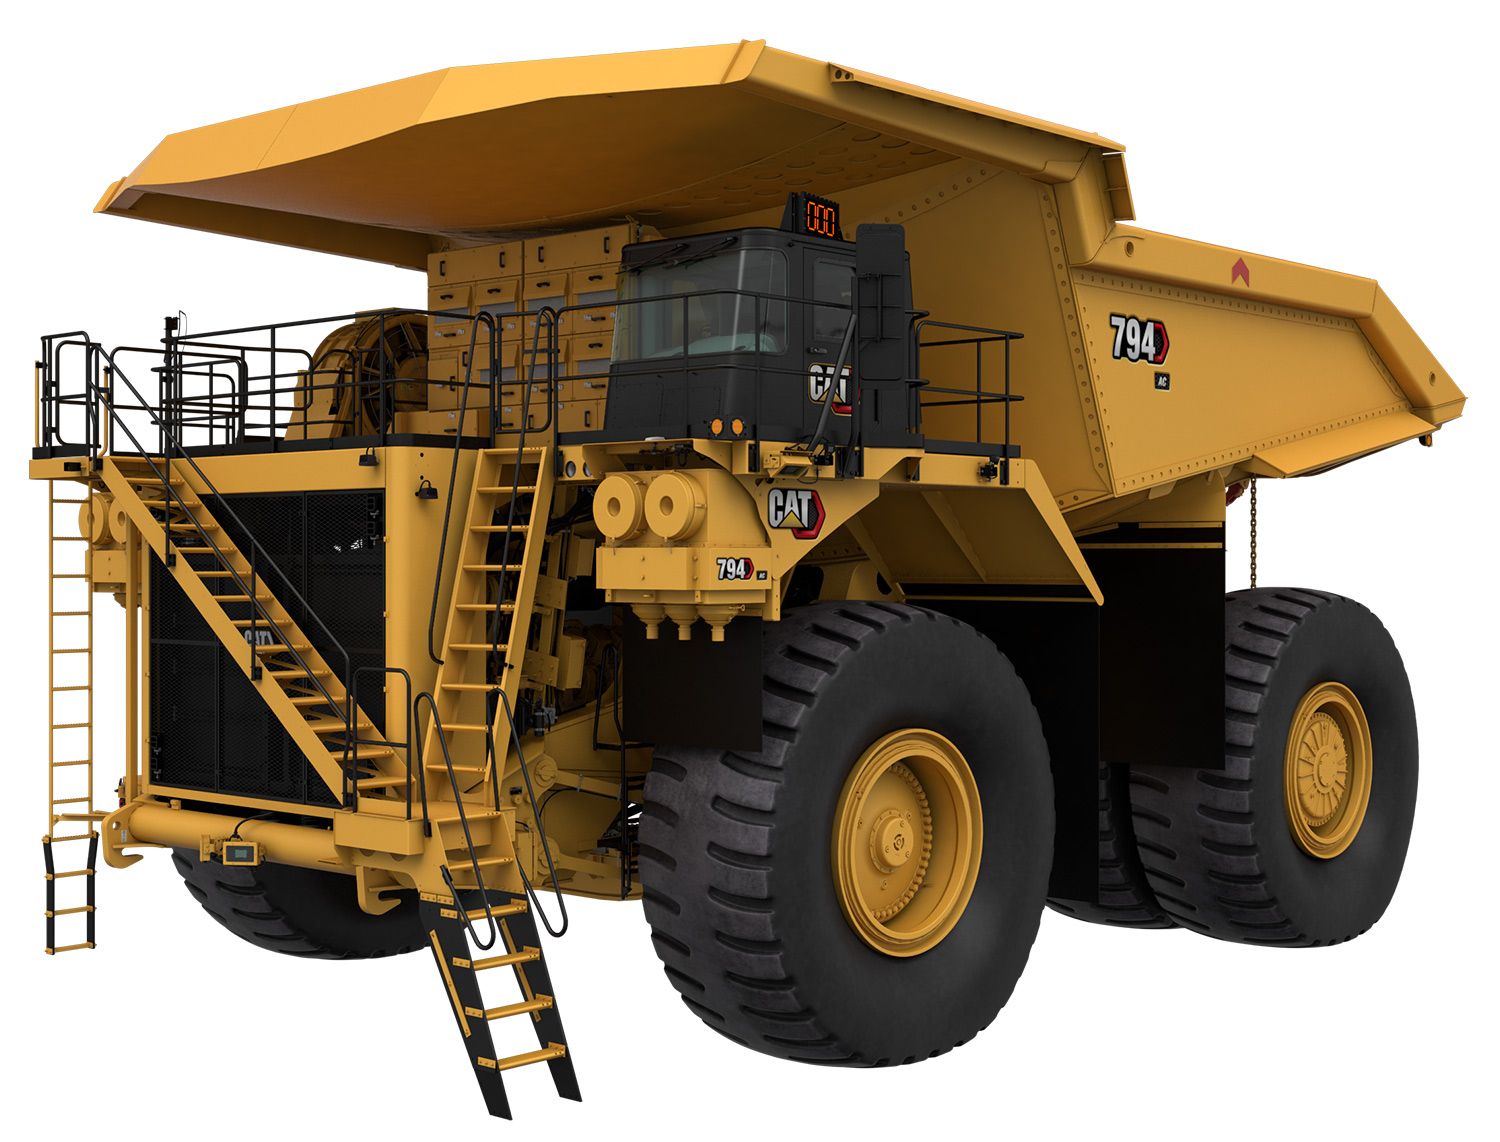 794 AC Mining Truck / Haul Truck, Cat